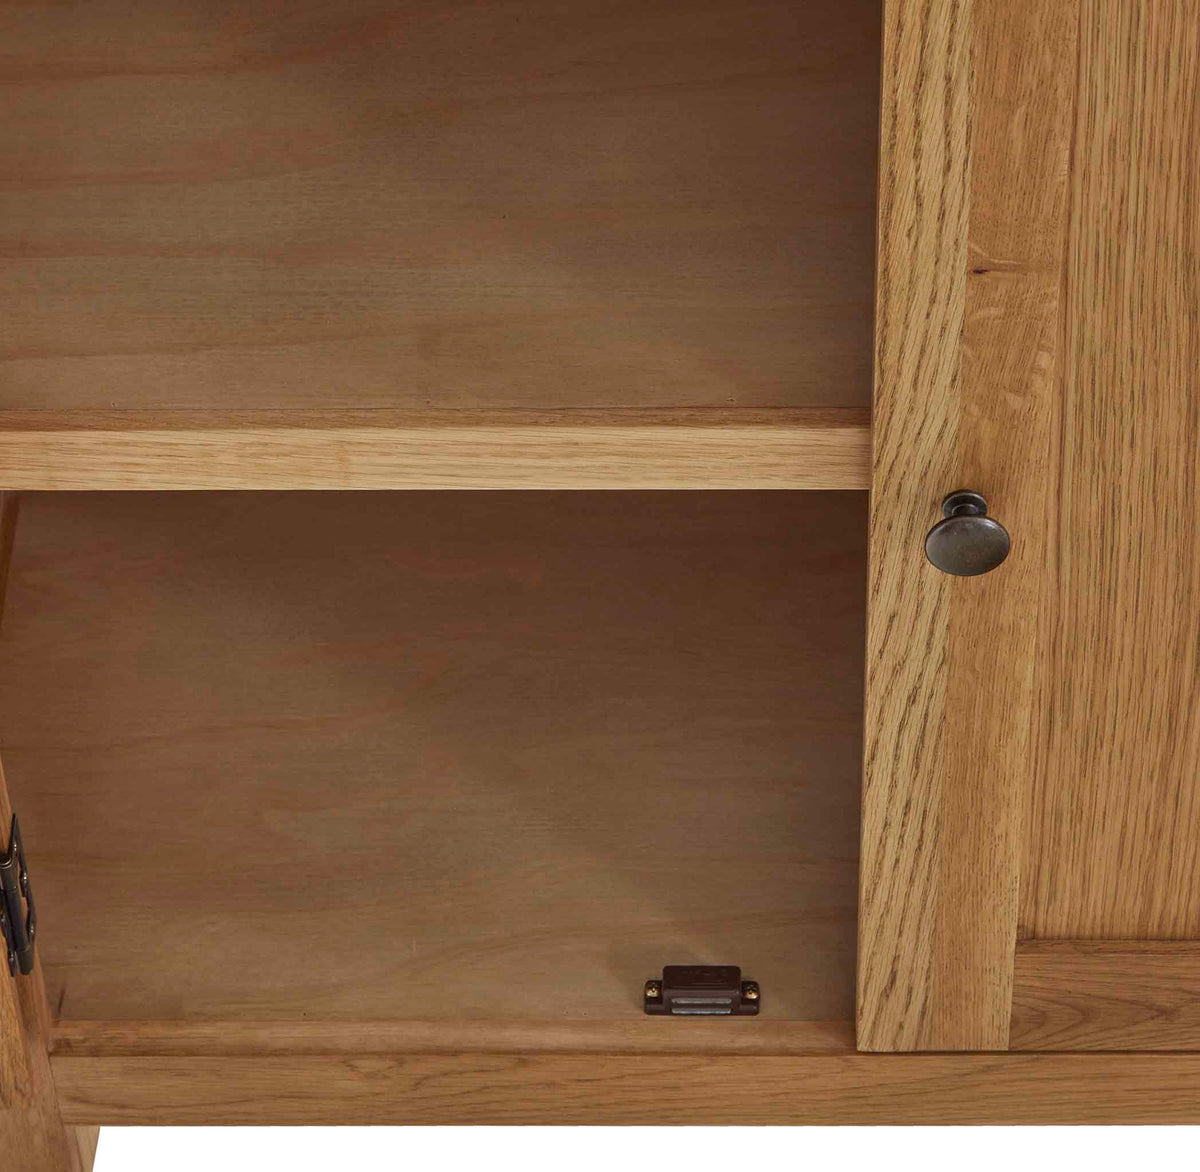 Zelah Oak Display Cabinet - Showing inside shelf